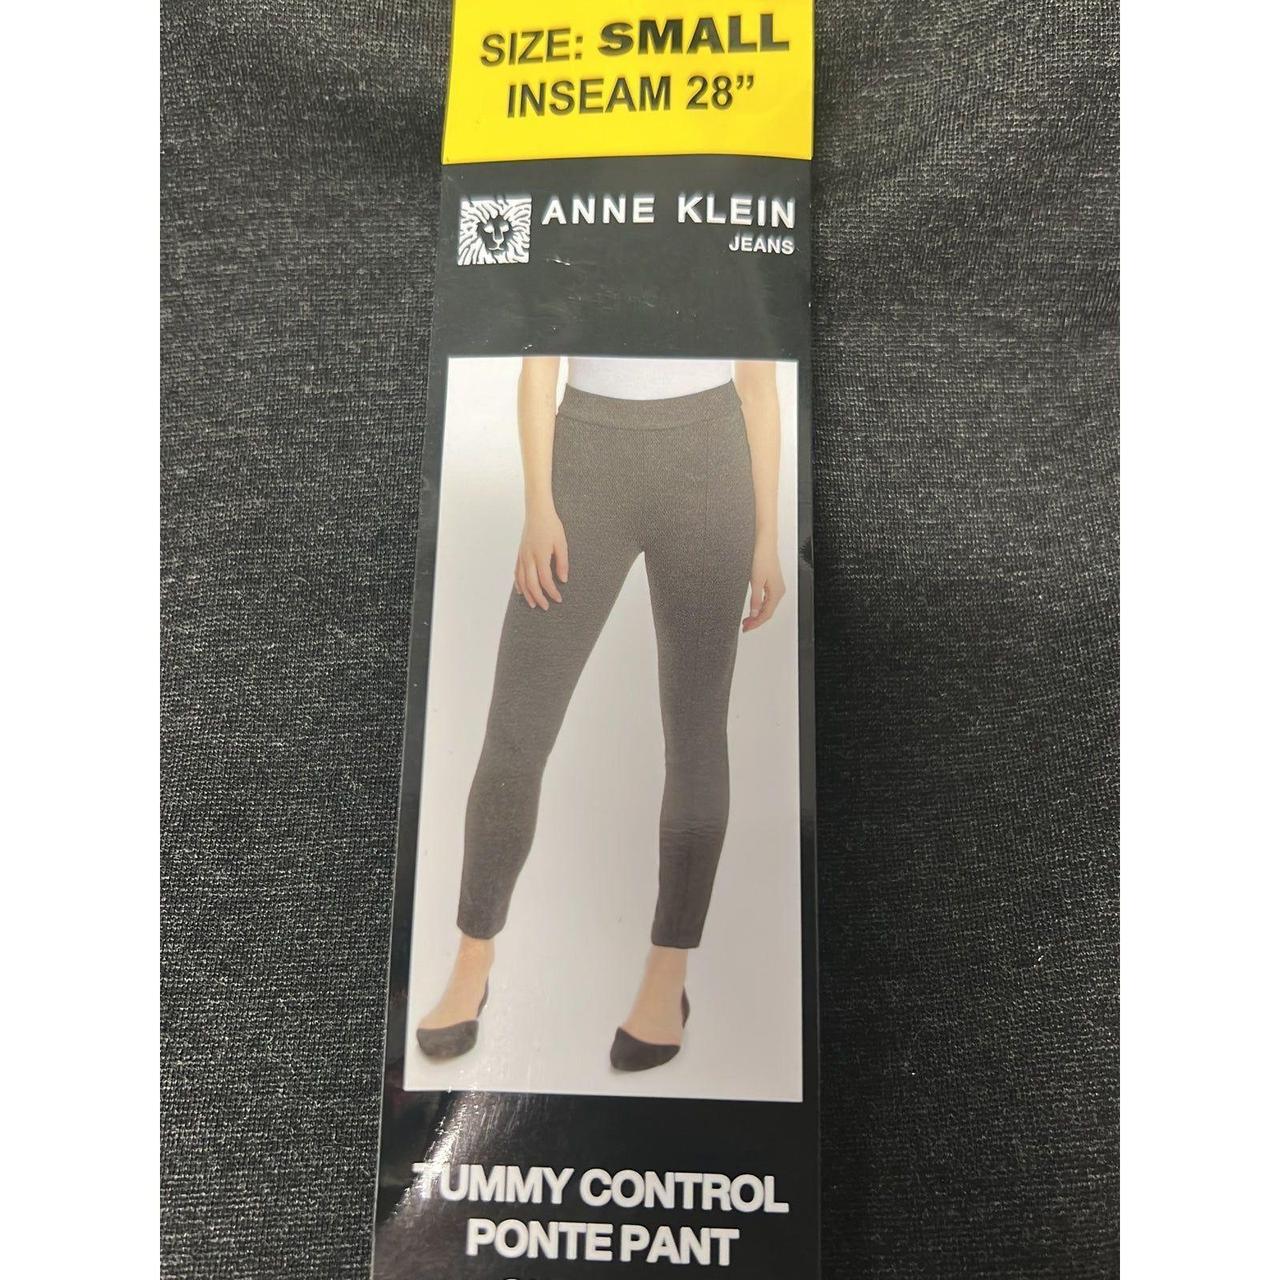 Anne Klein Women Size Small, Tummy Control Ponte Pants, Charcoal Gray